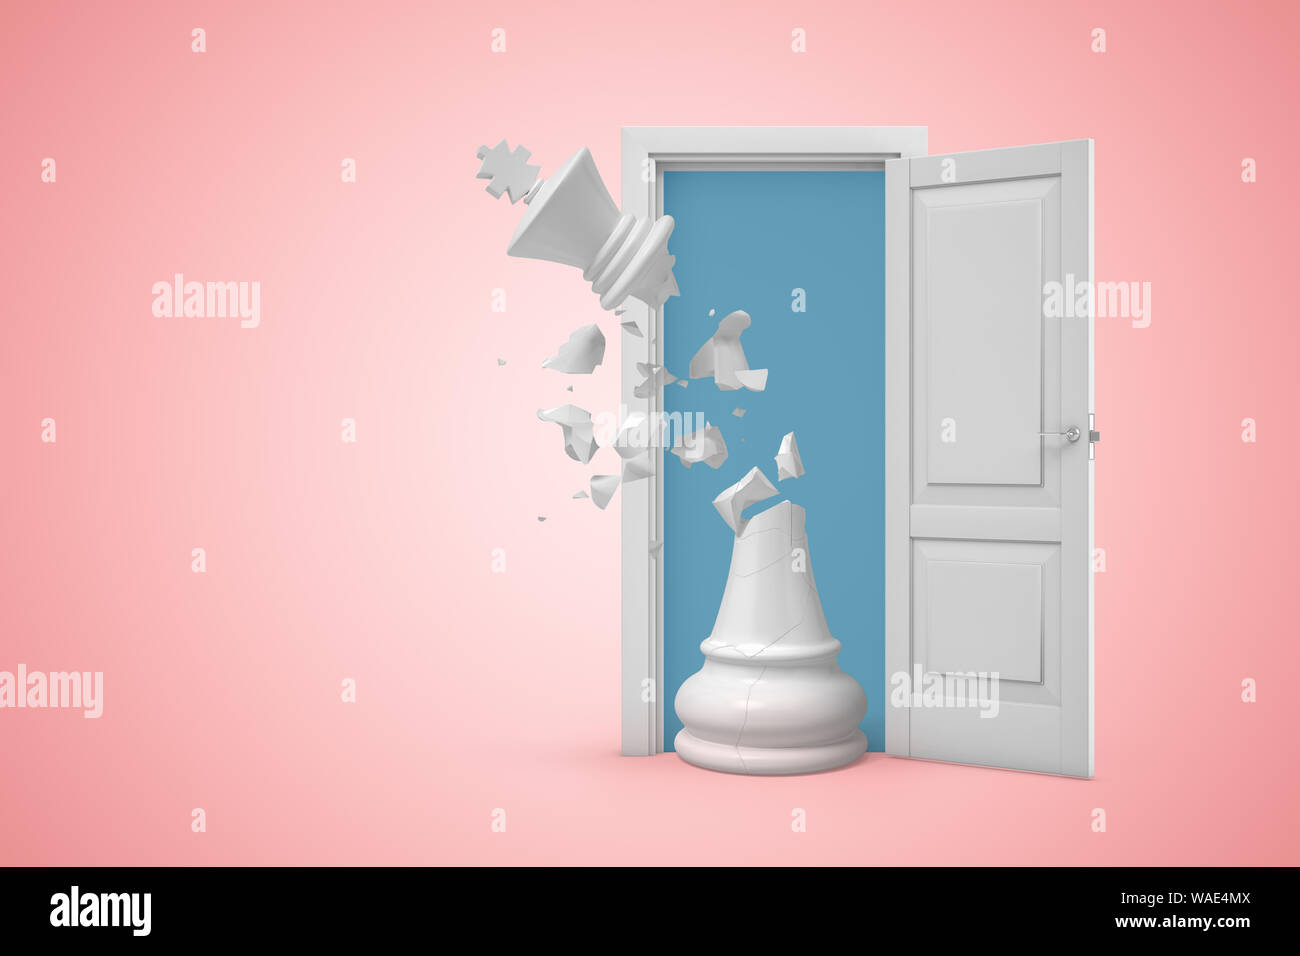 3D-Rendering von Big White Schach König mit seinen Oberen gebrochen und Stücke fliegen in die Luft, in der weißen Tür steht auf rosa Kopie Raum Hintergrund. Politische Stockfoto